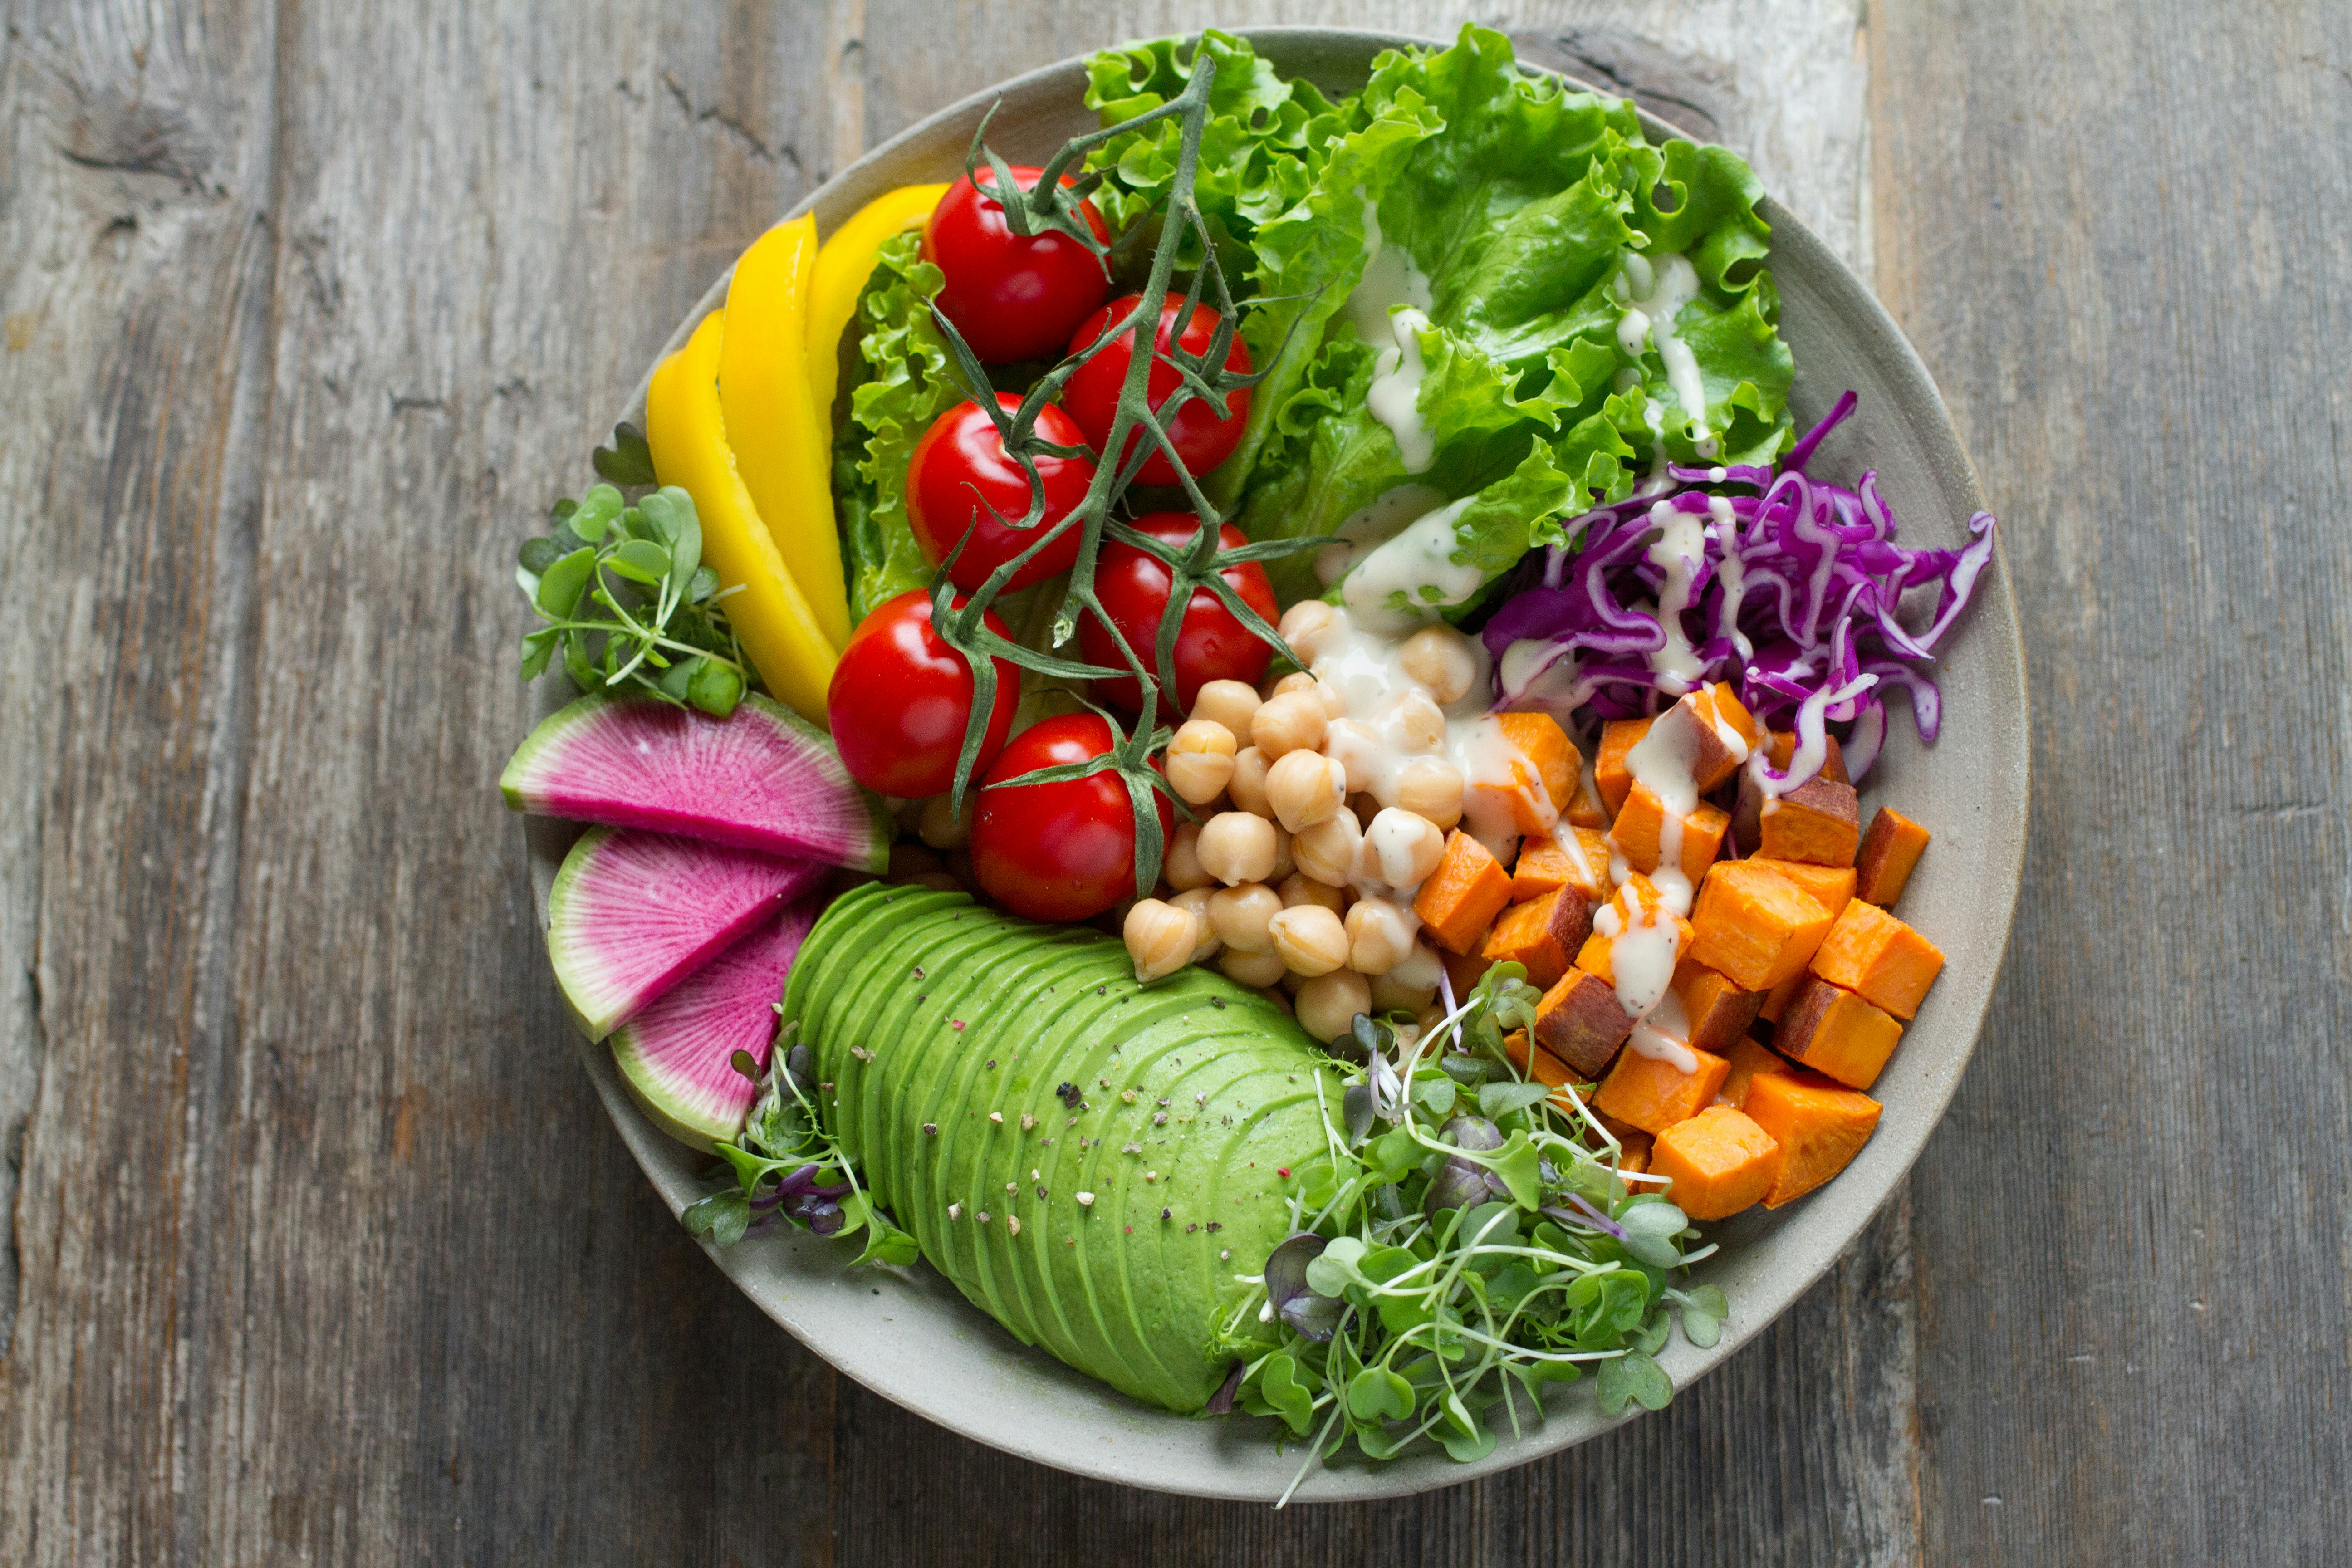 Healthy food - salad